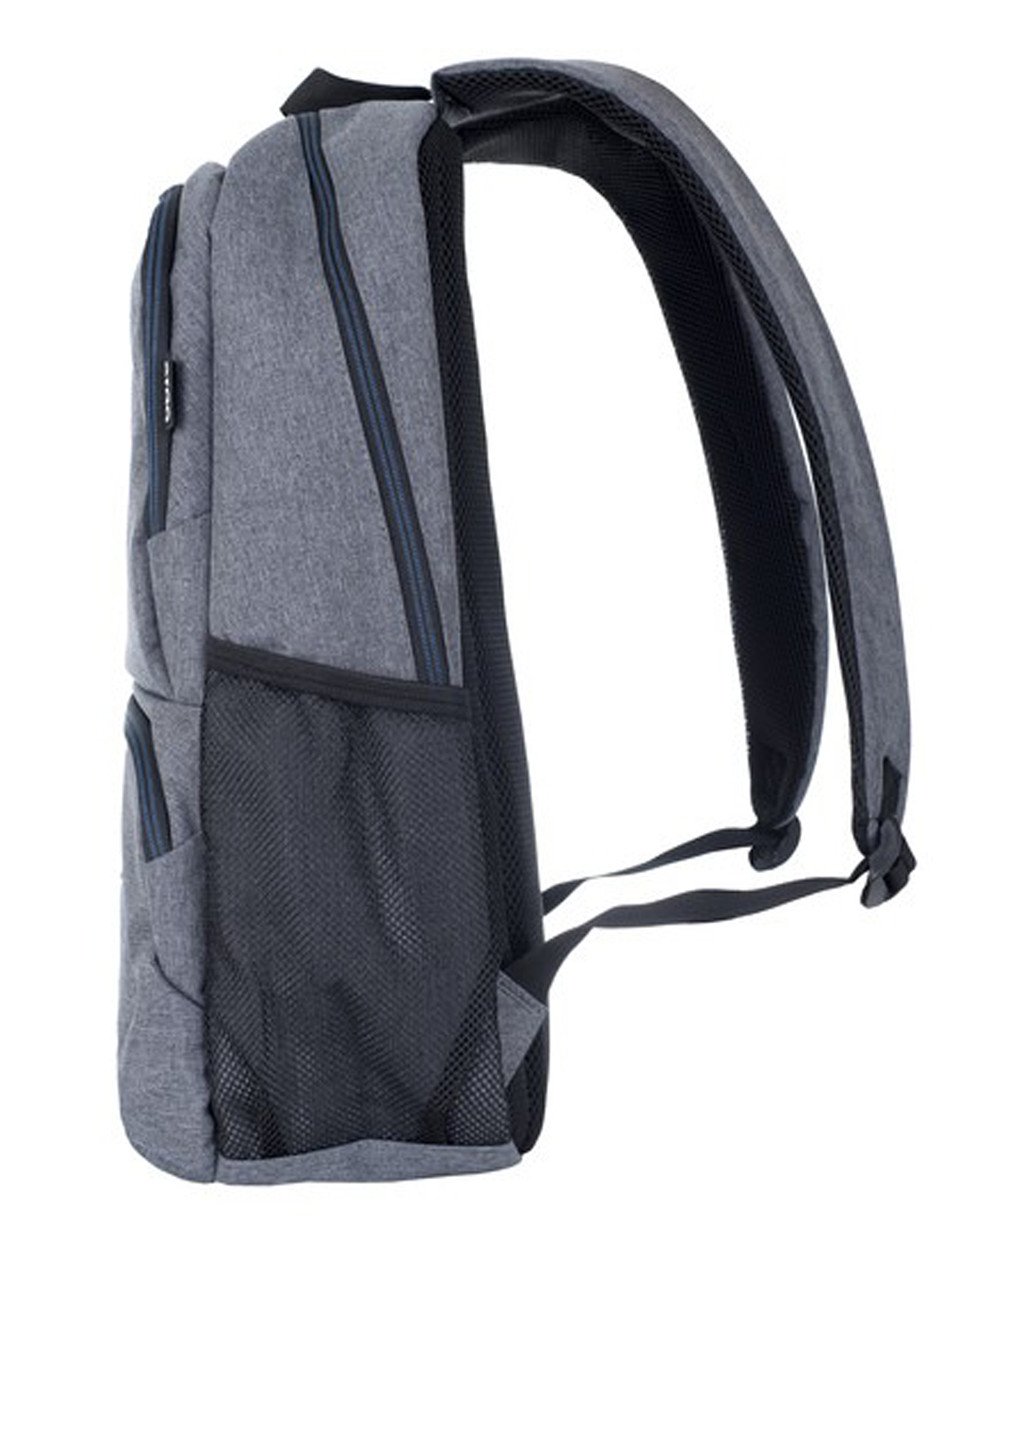 Рюкзак для ноутбука Ergo santander 316 (gray) (135165275)